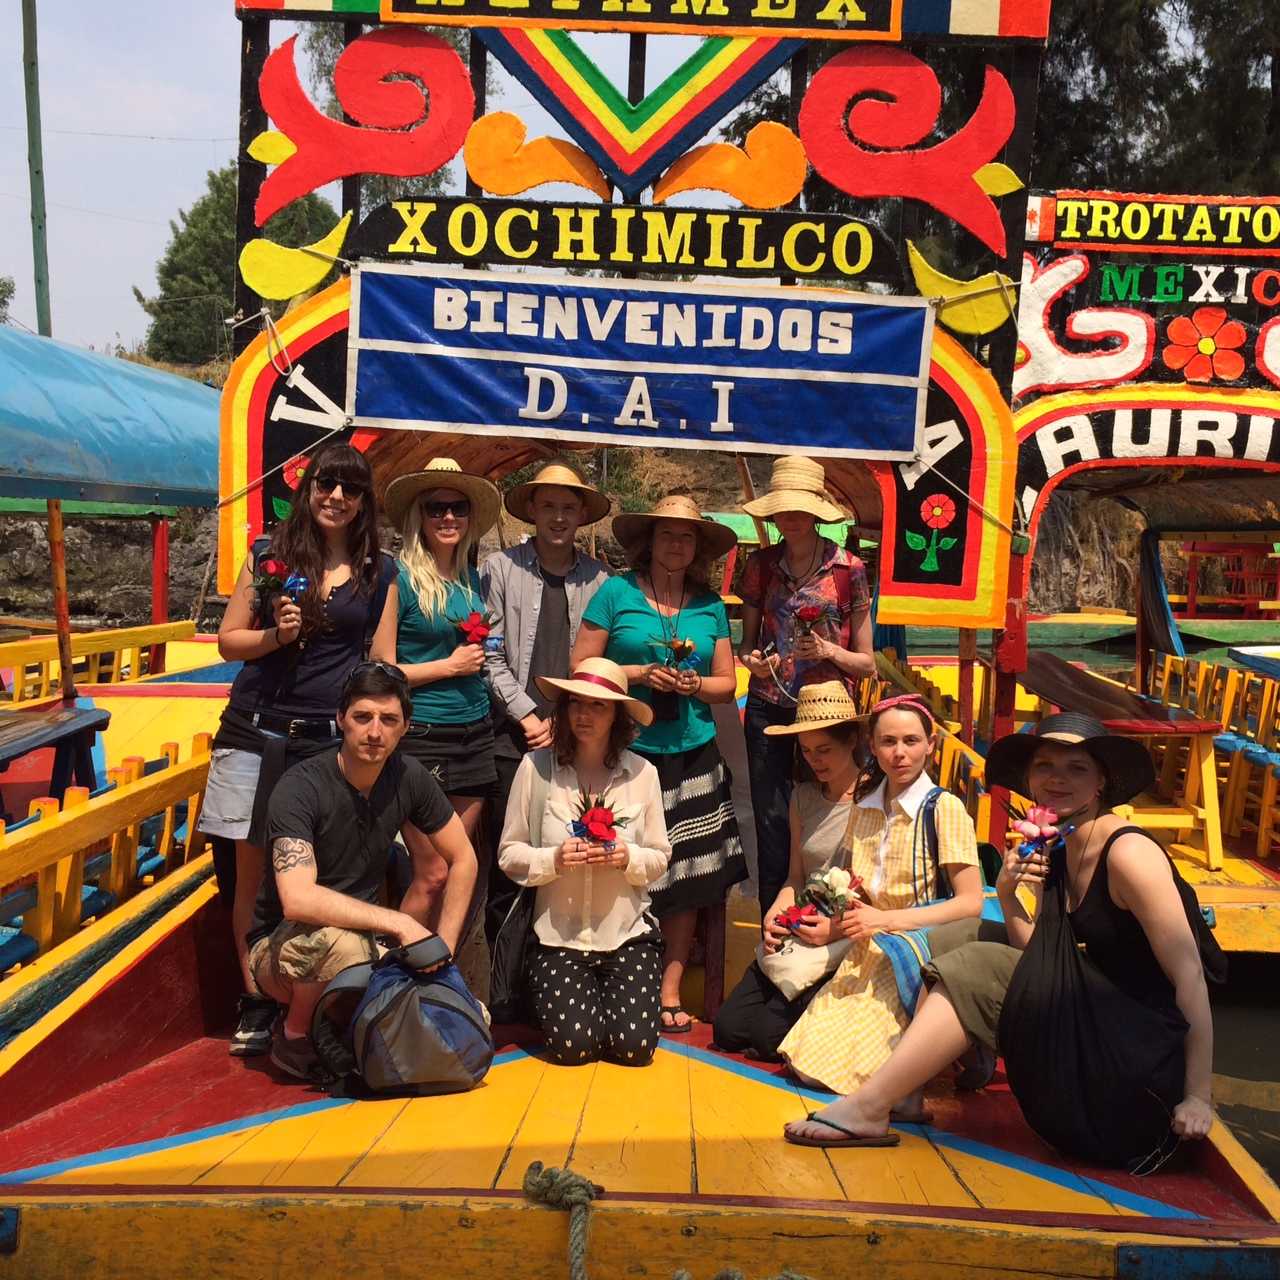 Xochimilco Mexico